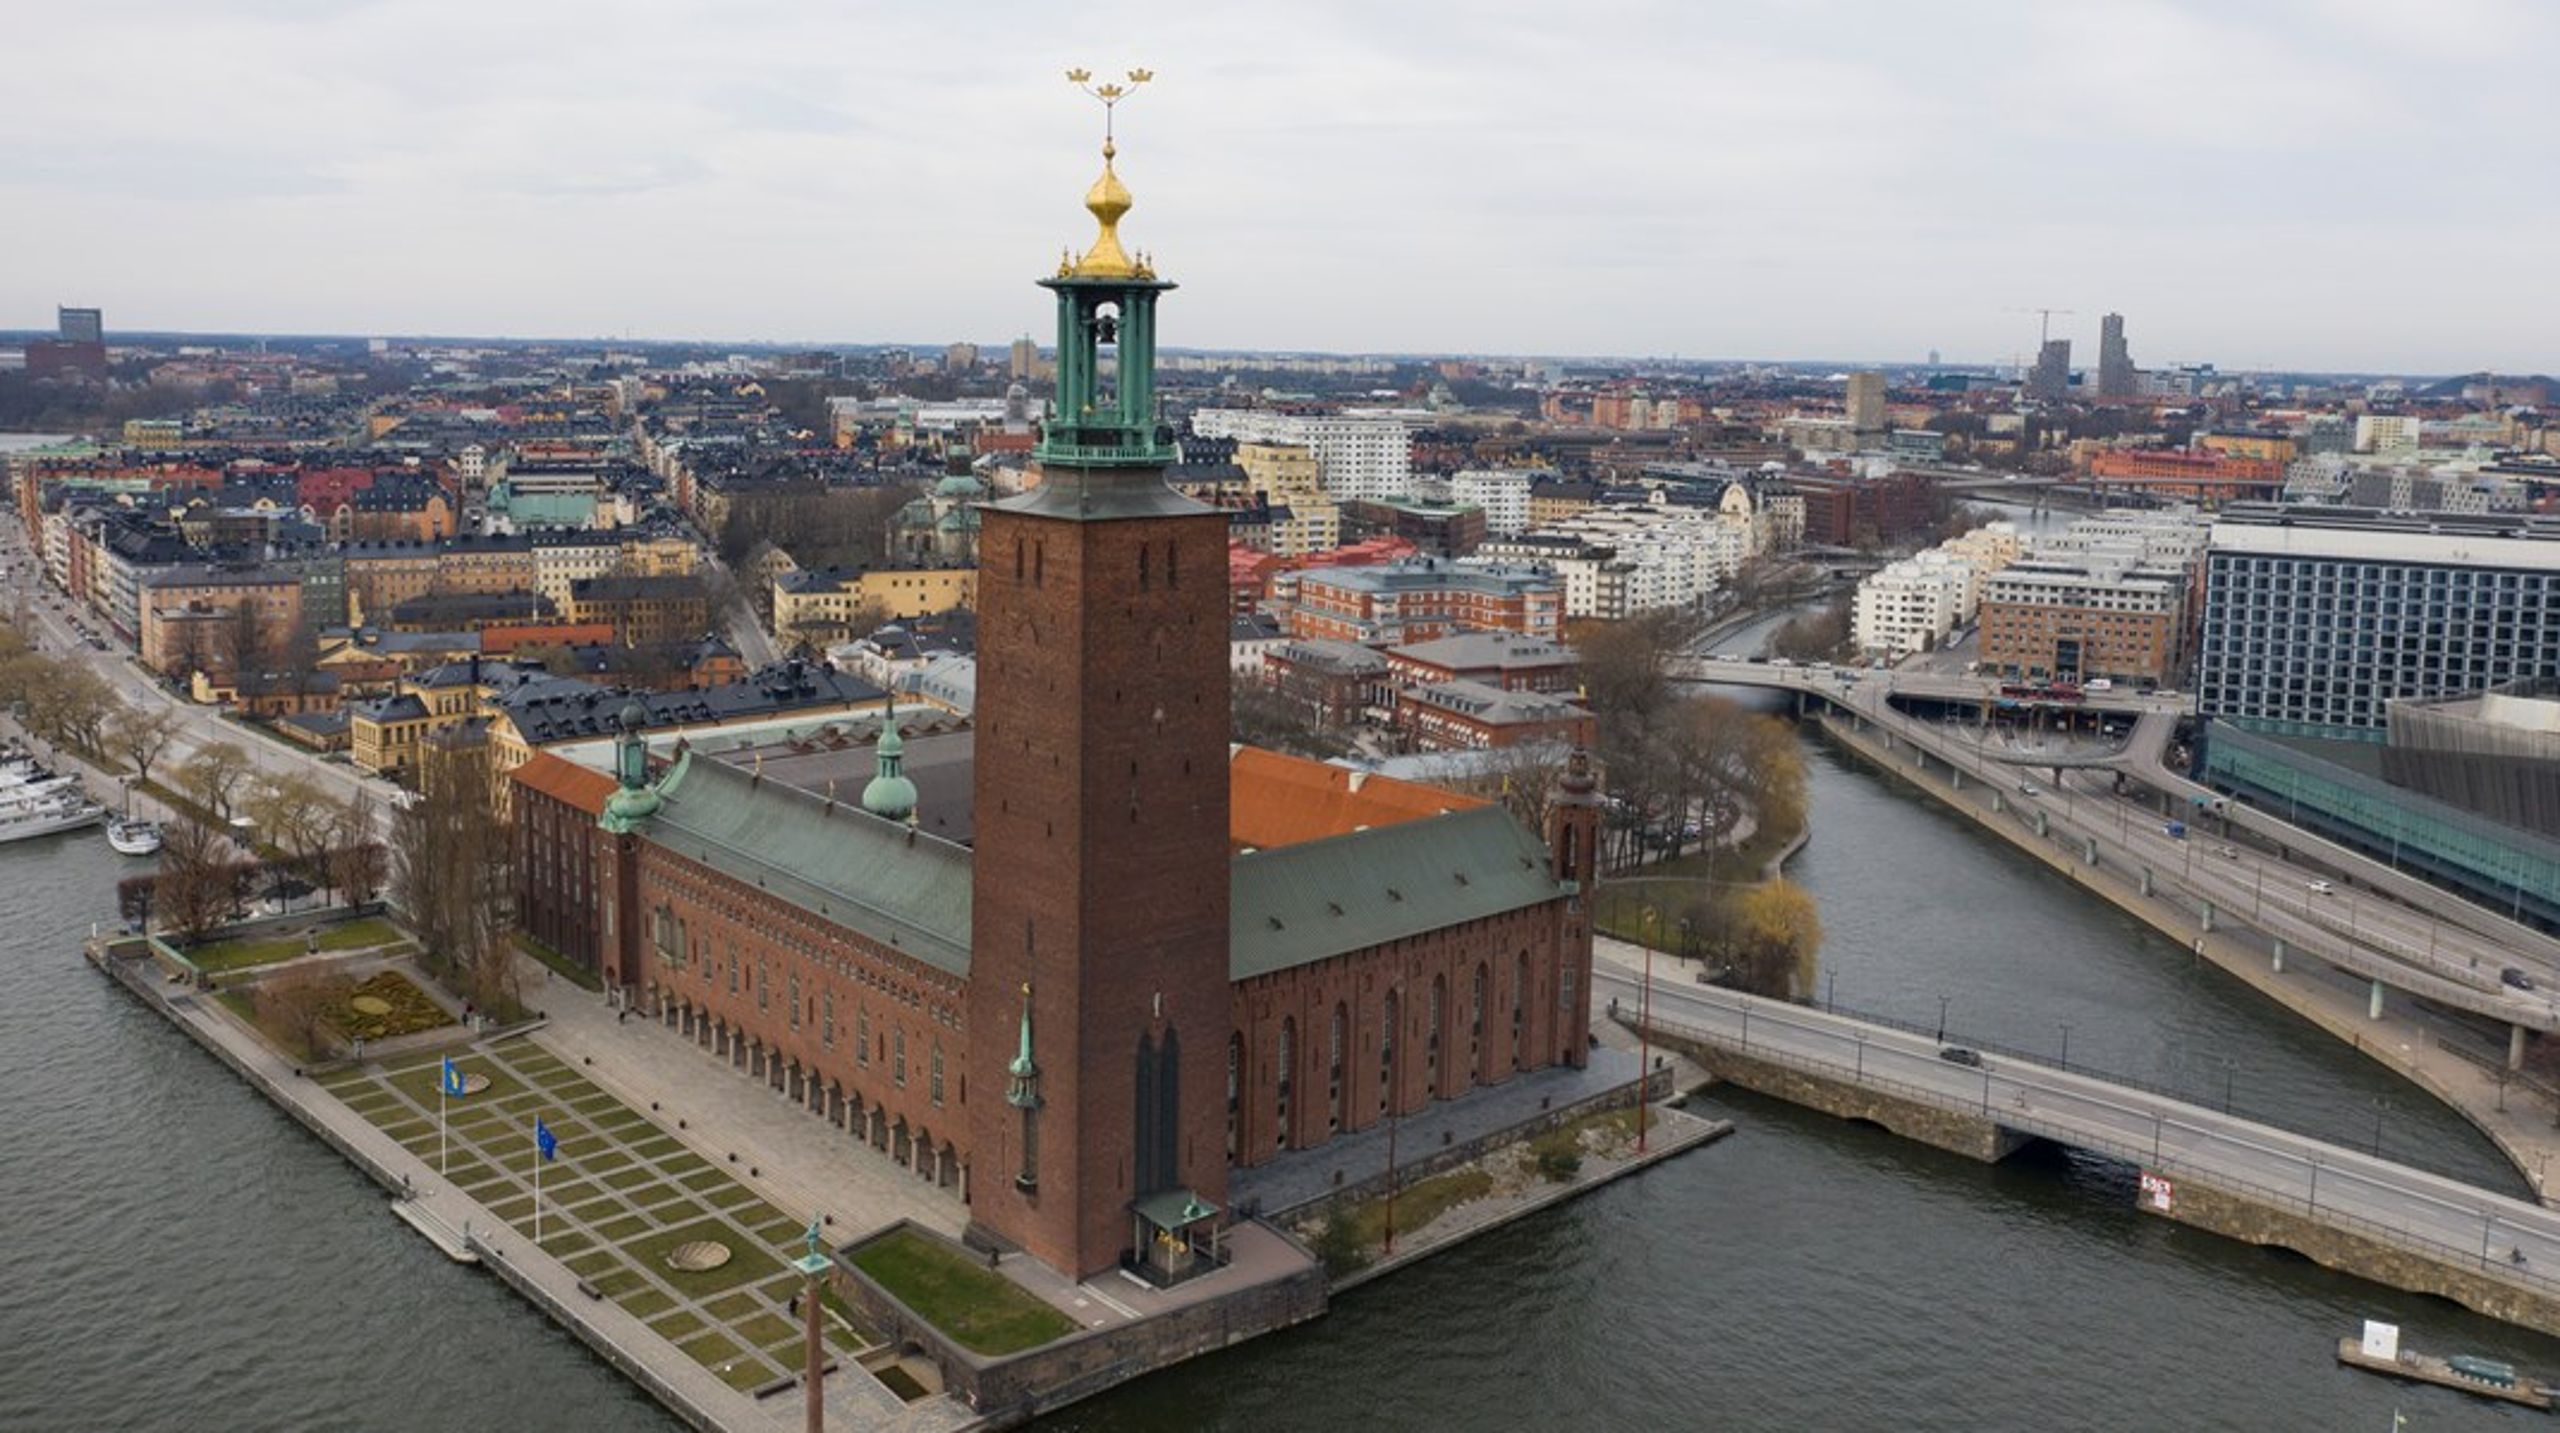 Stockholms stadshus hade inte varit vad det är i dag om inte arkitekten Ragnar Östberg tillåtits hämta inspiration från utlandet, menar debattören.